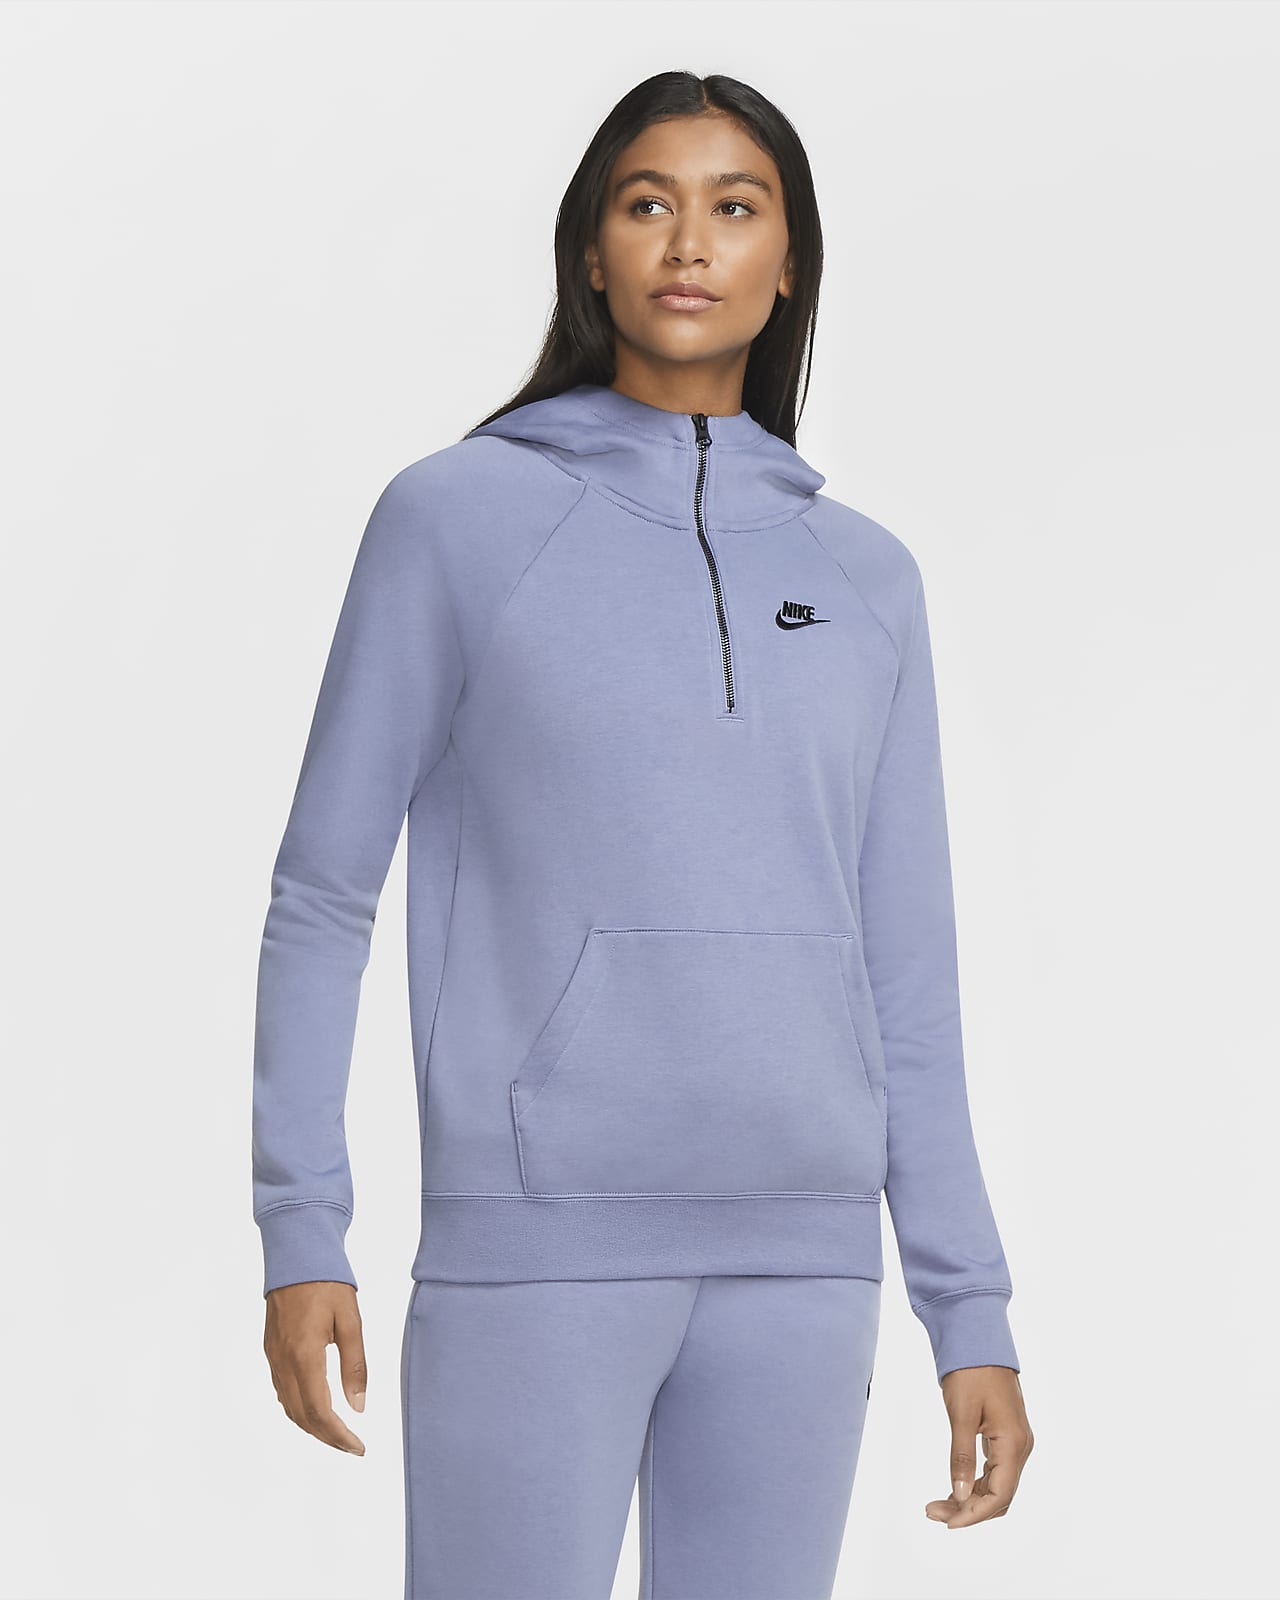 grey nike zip up hoodie womens